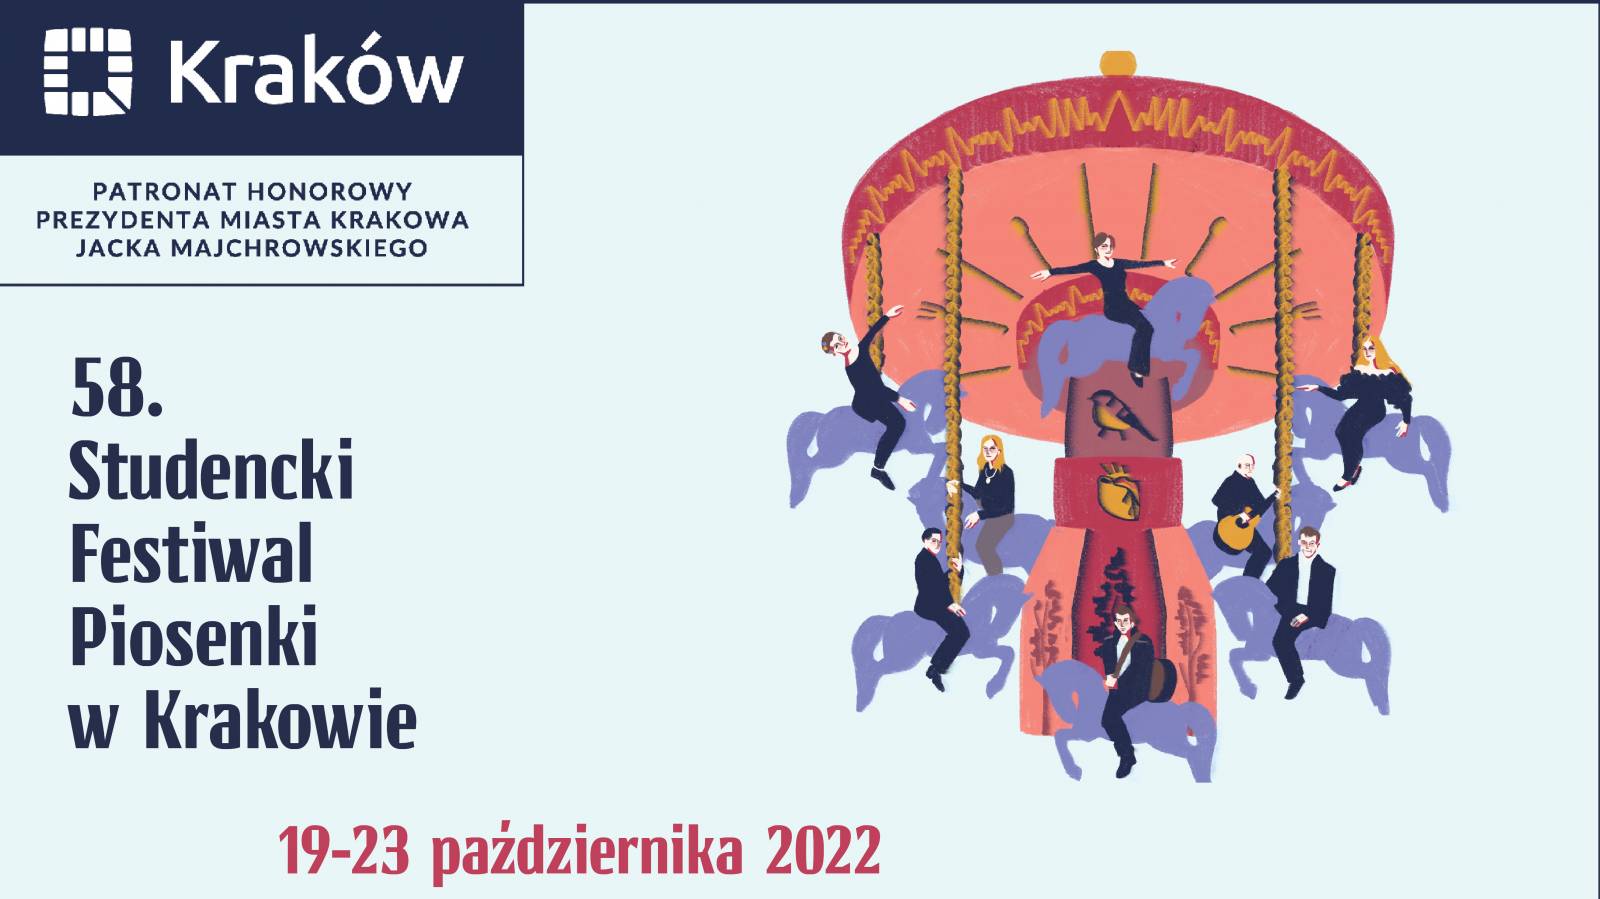 58th Student Song Festival in Kraków